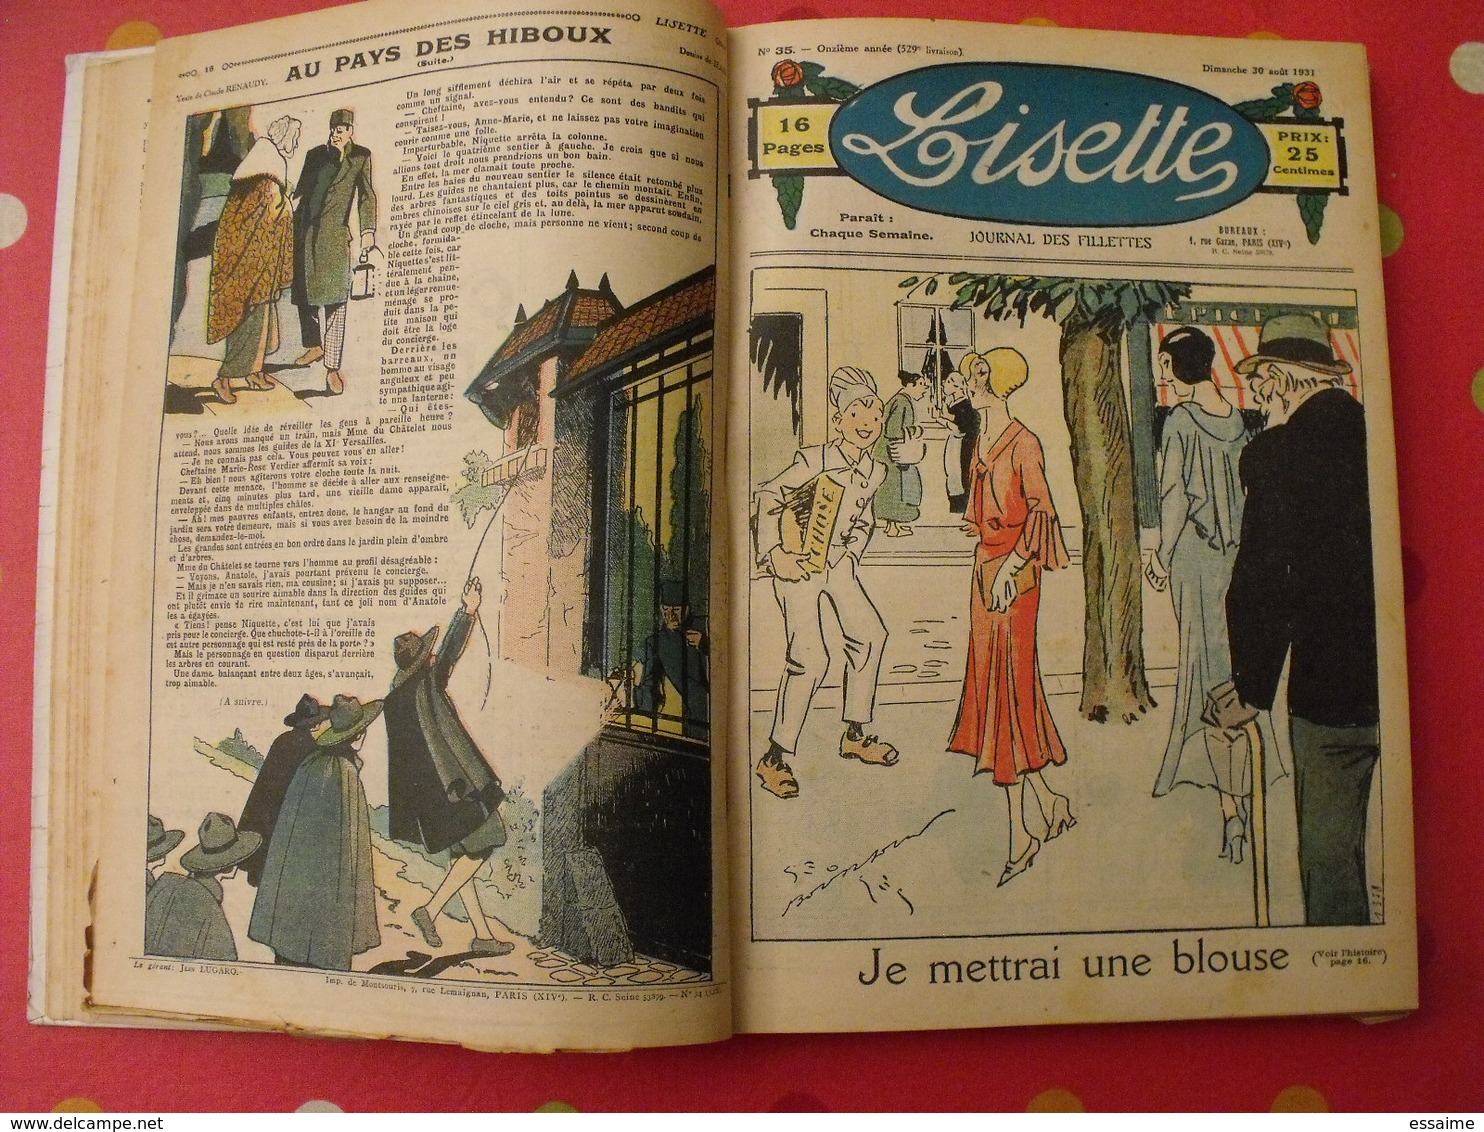 Lisette, album 9 IX. 1931-1932. recueil reliure. le rallic levesque maitrejean cuvillier bourdin dot